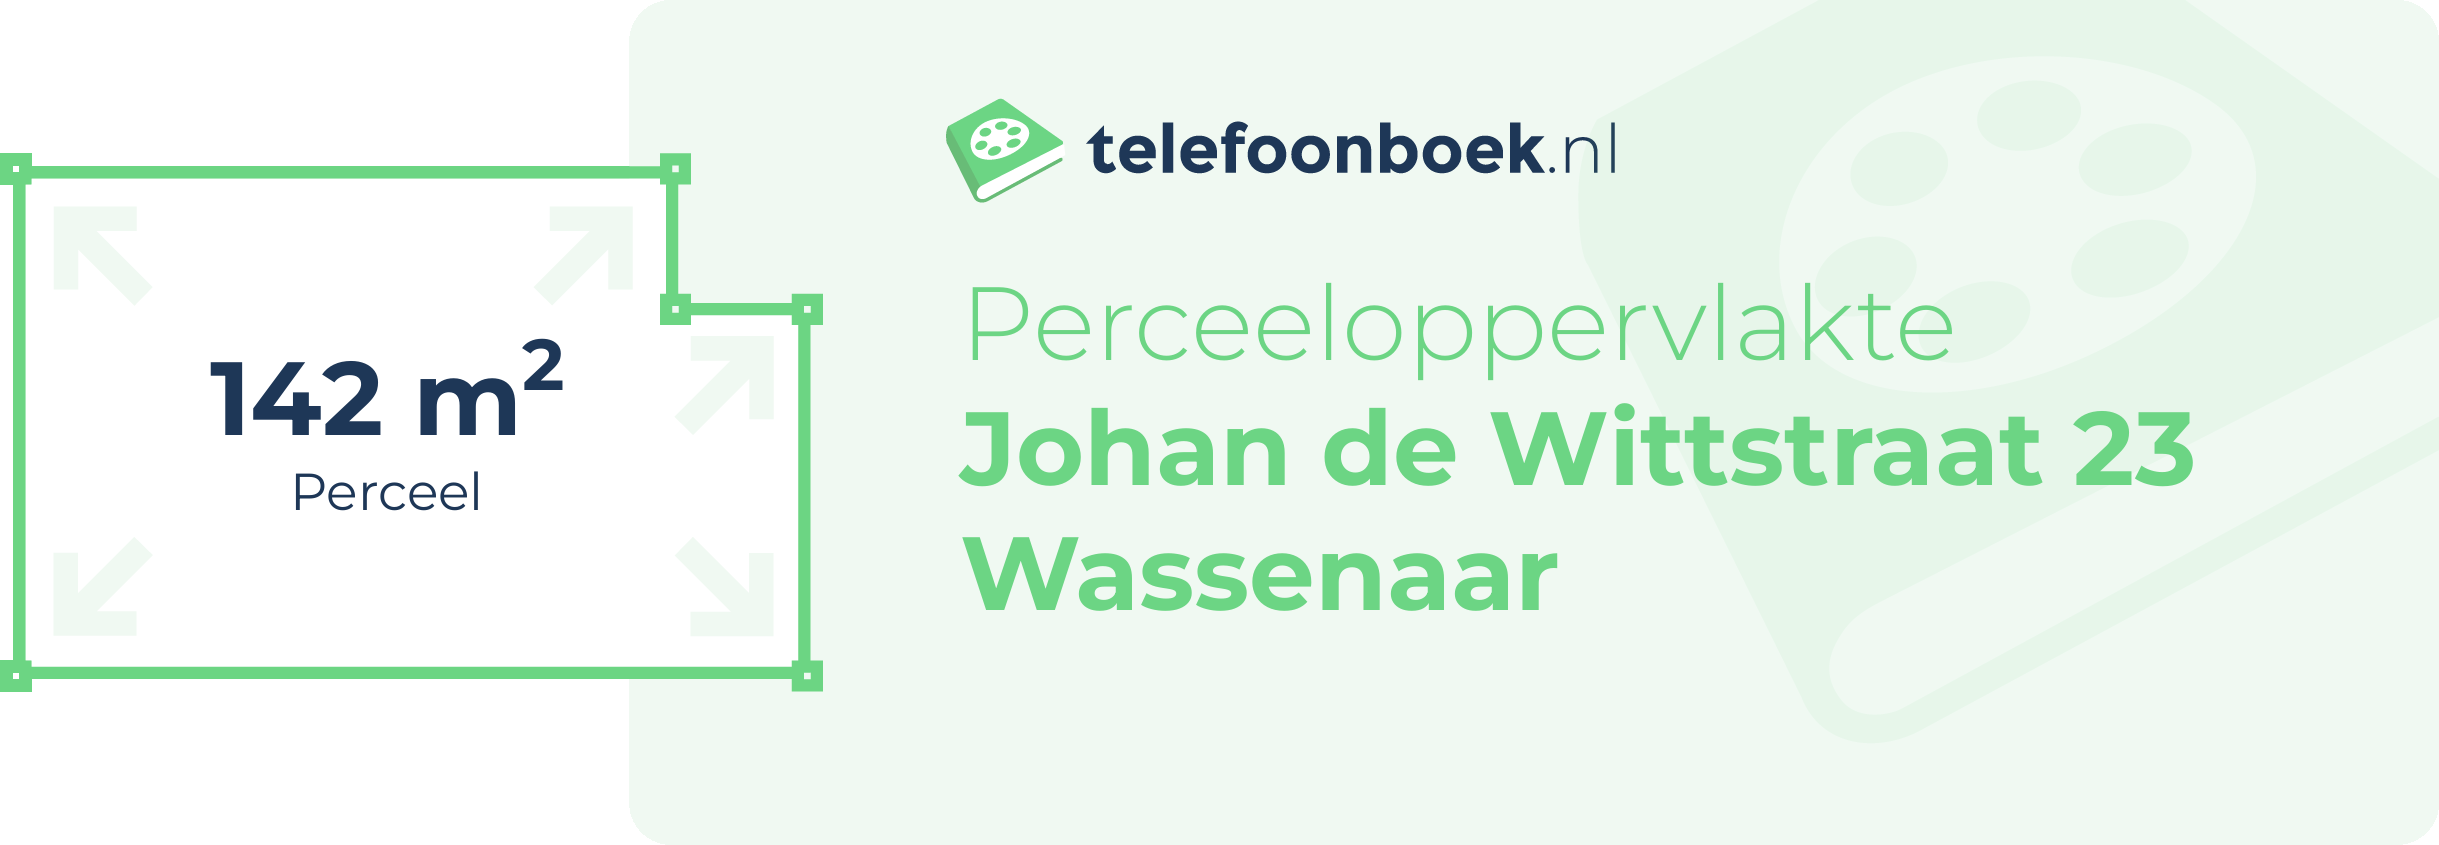 Perceeloppervlakte Johan De Wittstraat 23 Wassenaar